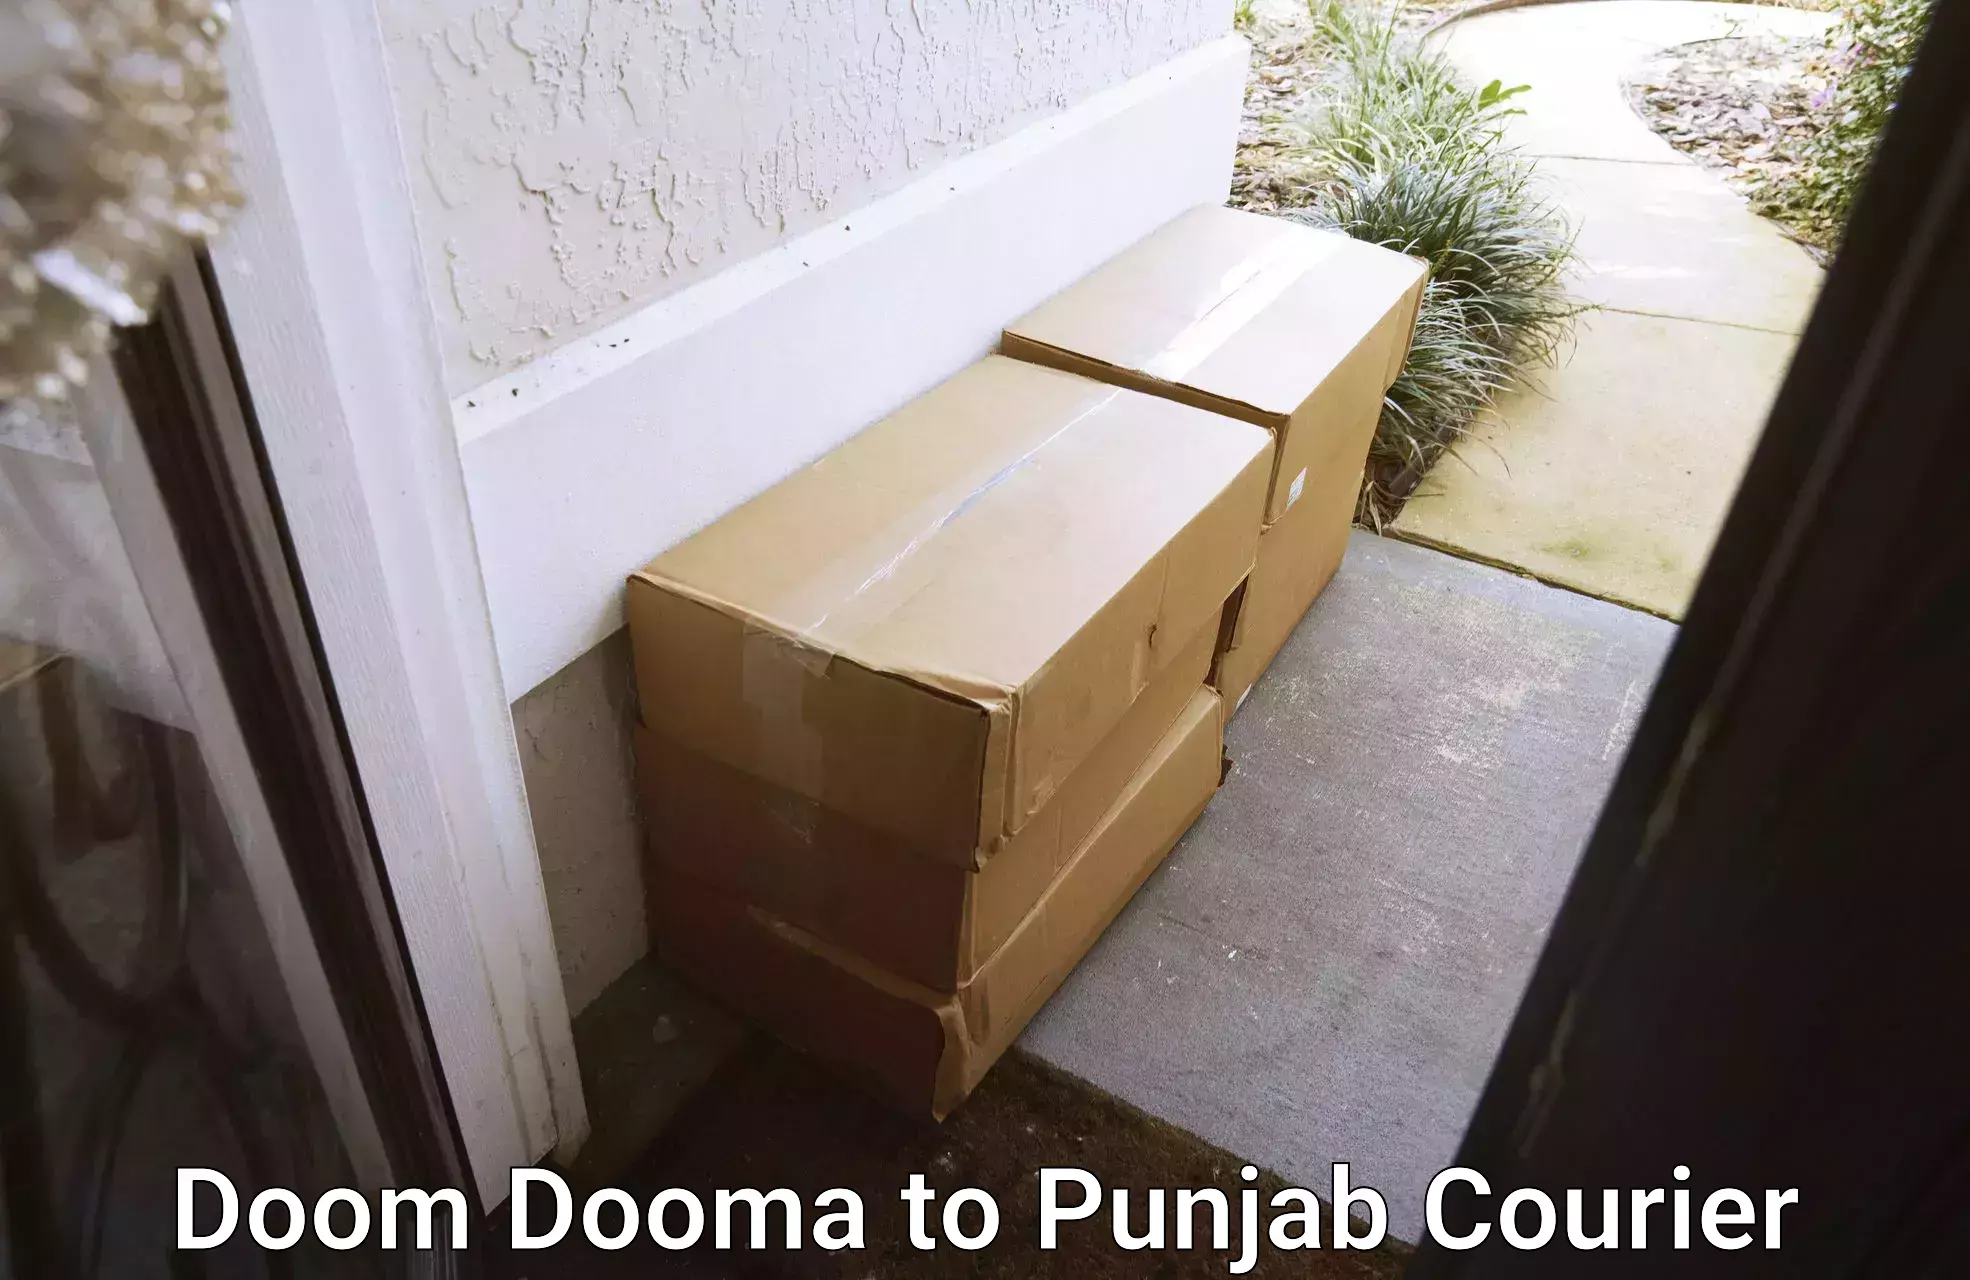 Express delivery capabilities Doom Dooma to Khanna